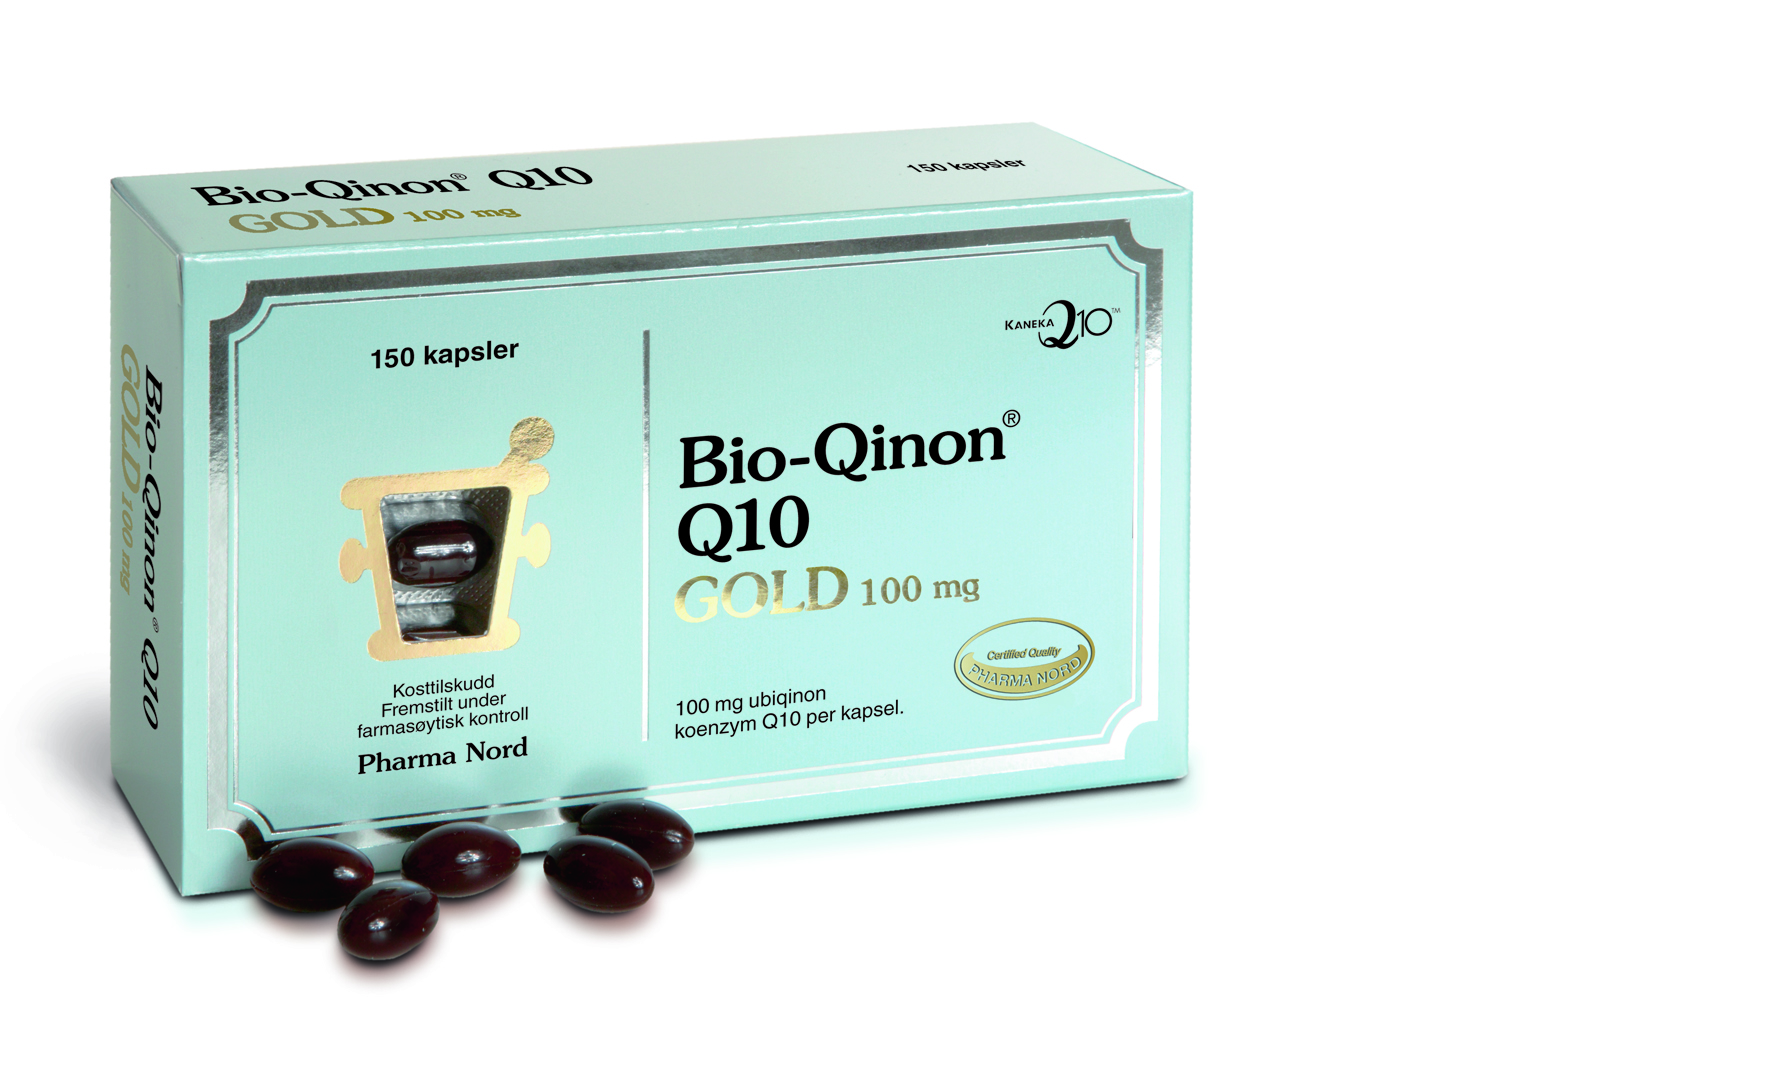 Pharma Nord Bio-Qinon Active Q10 Gold 100 mg kapsler, 150 stk.